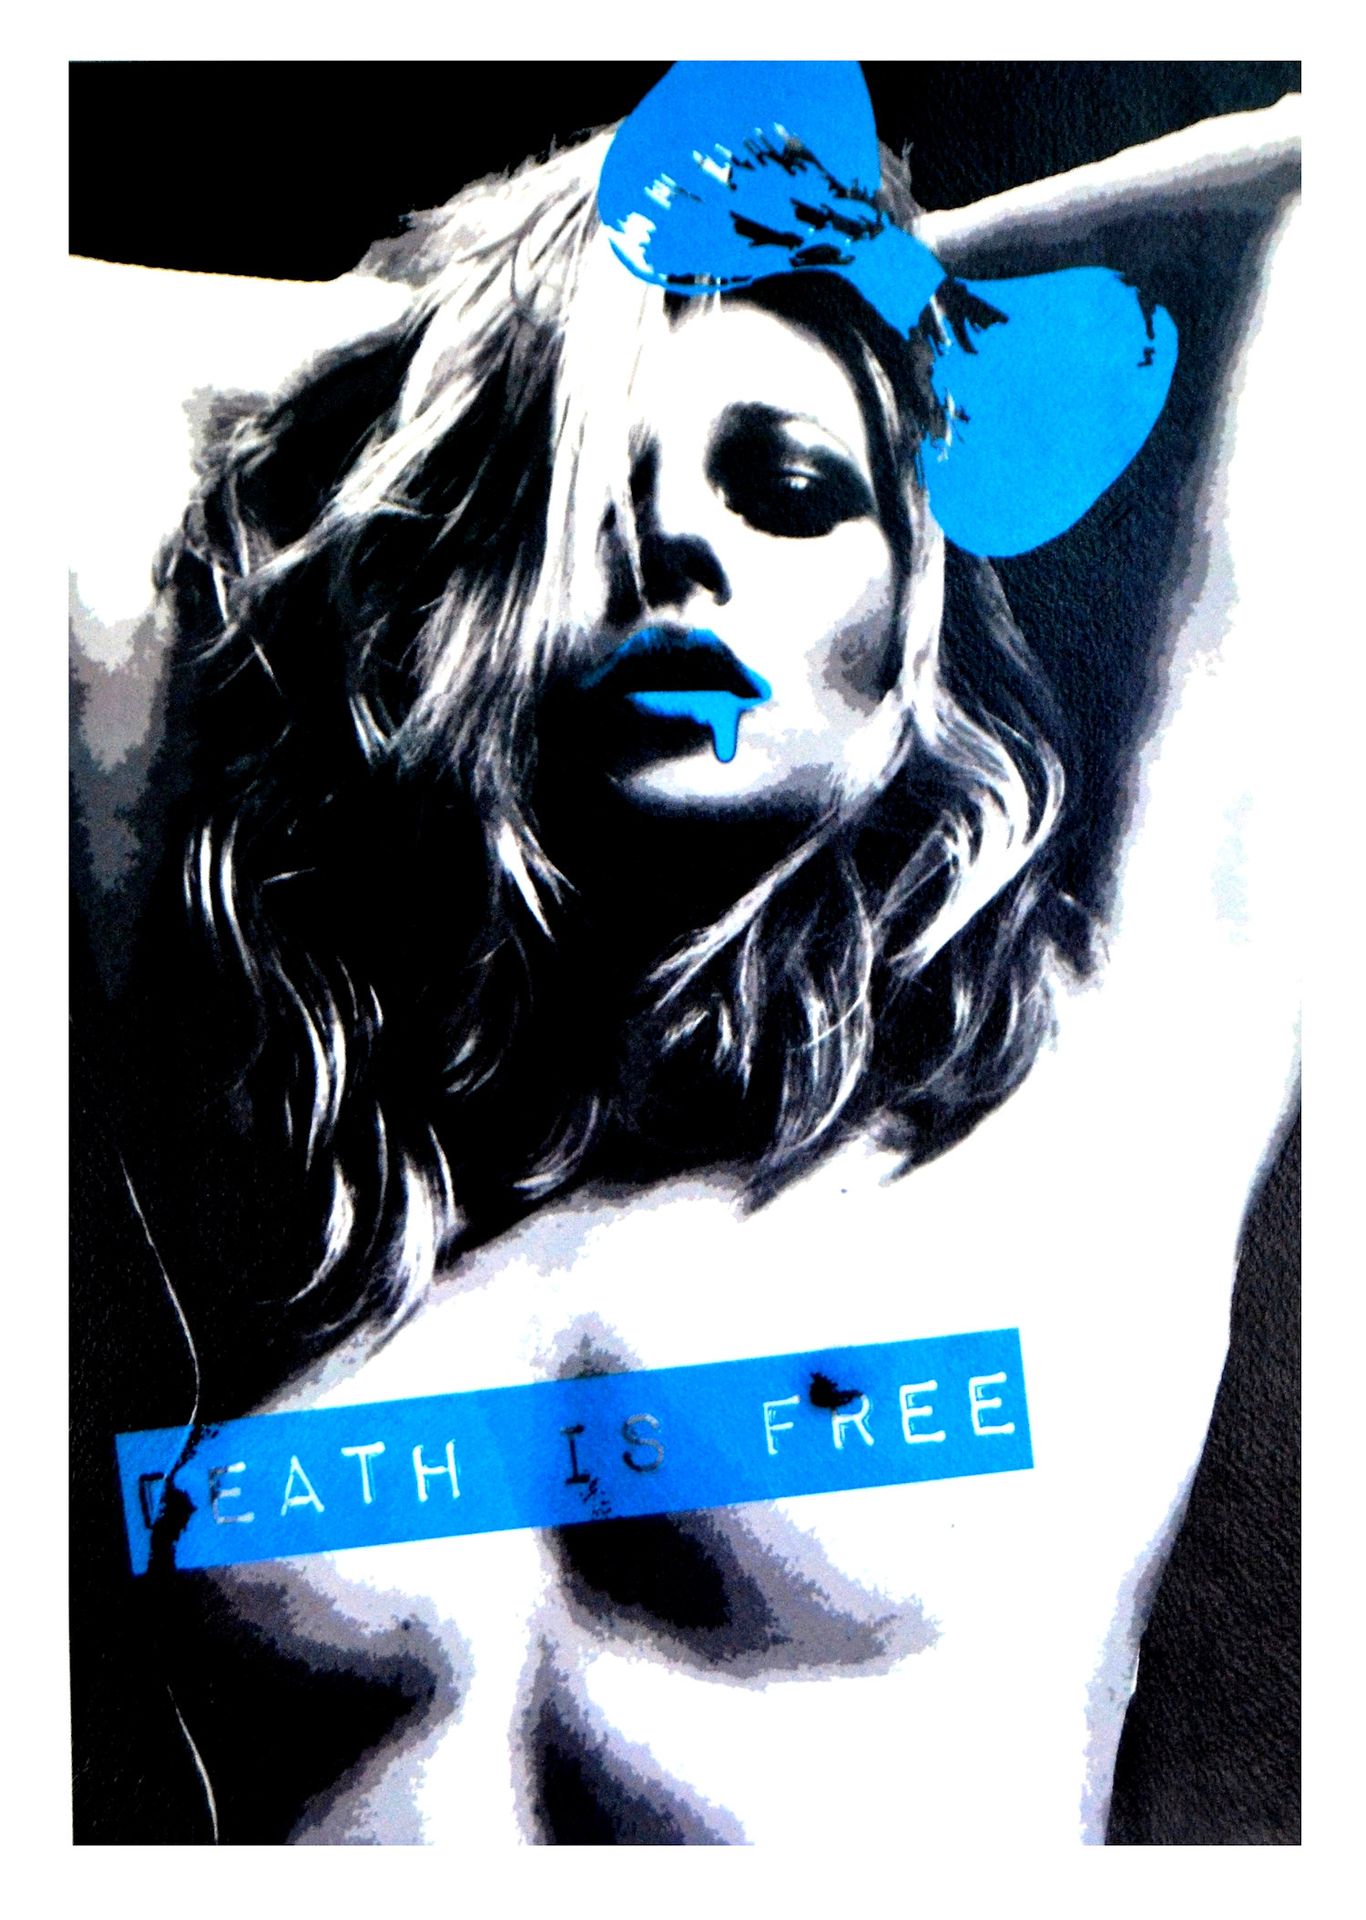 Death NYC 纽约市的死亡

凯特-珀斯P蓝，2014

丝网印刷。

限量发行100张印刷品。

尺寸：45 x 32 cm - 300g艺术纸

丝网&hellip;